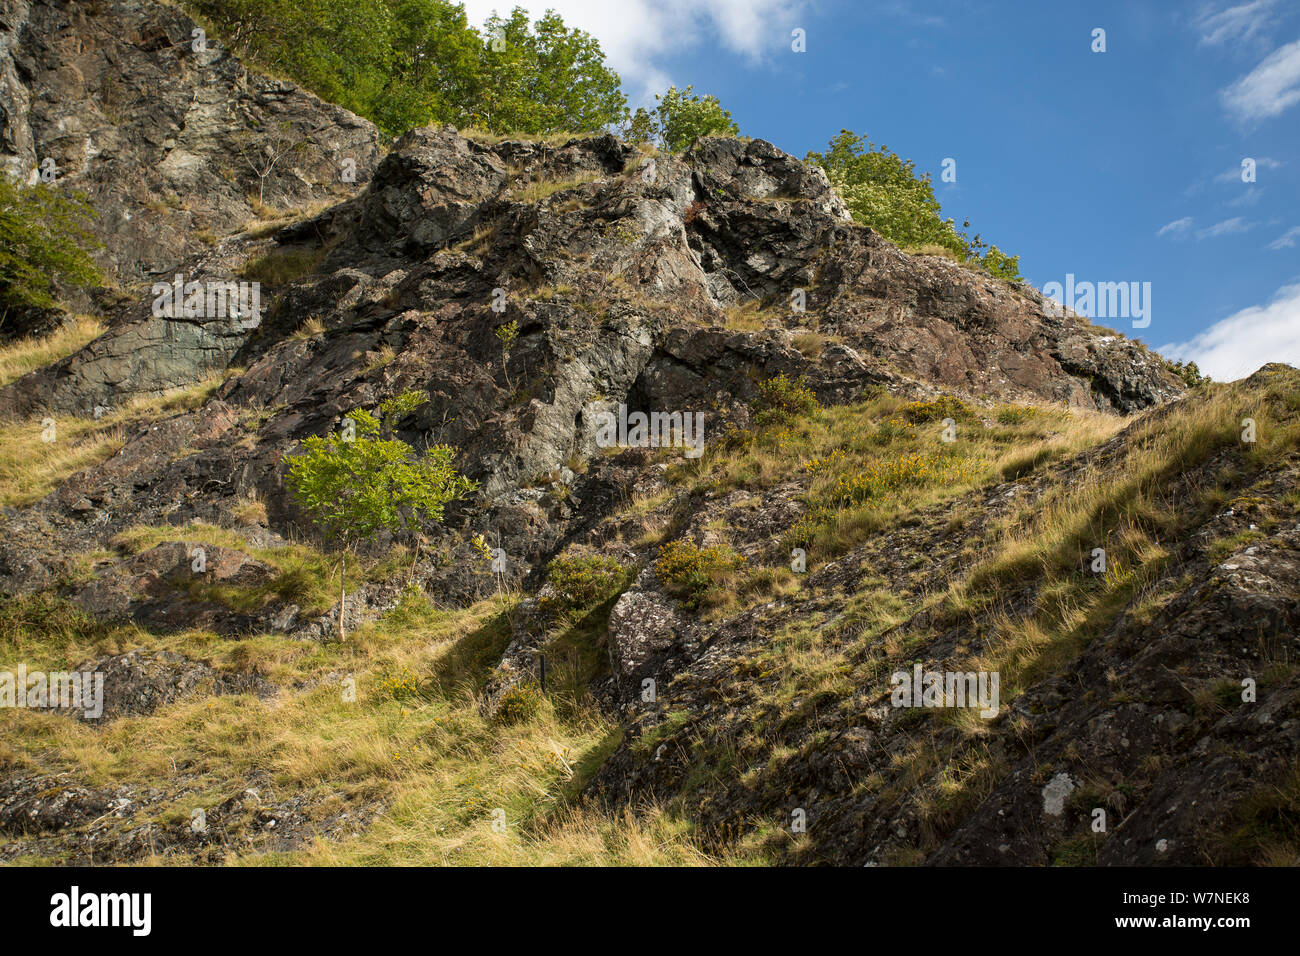 Roca ígnea geología y vegetación. Rocas Stanner Reserva Natural Nacional, Powys, Gales, Reino Unido. Foto de stock